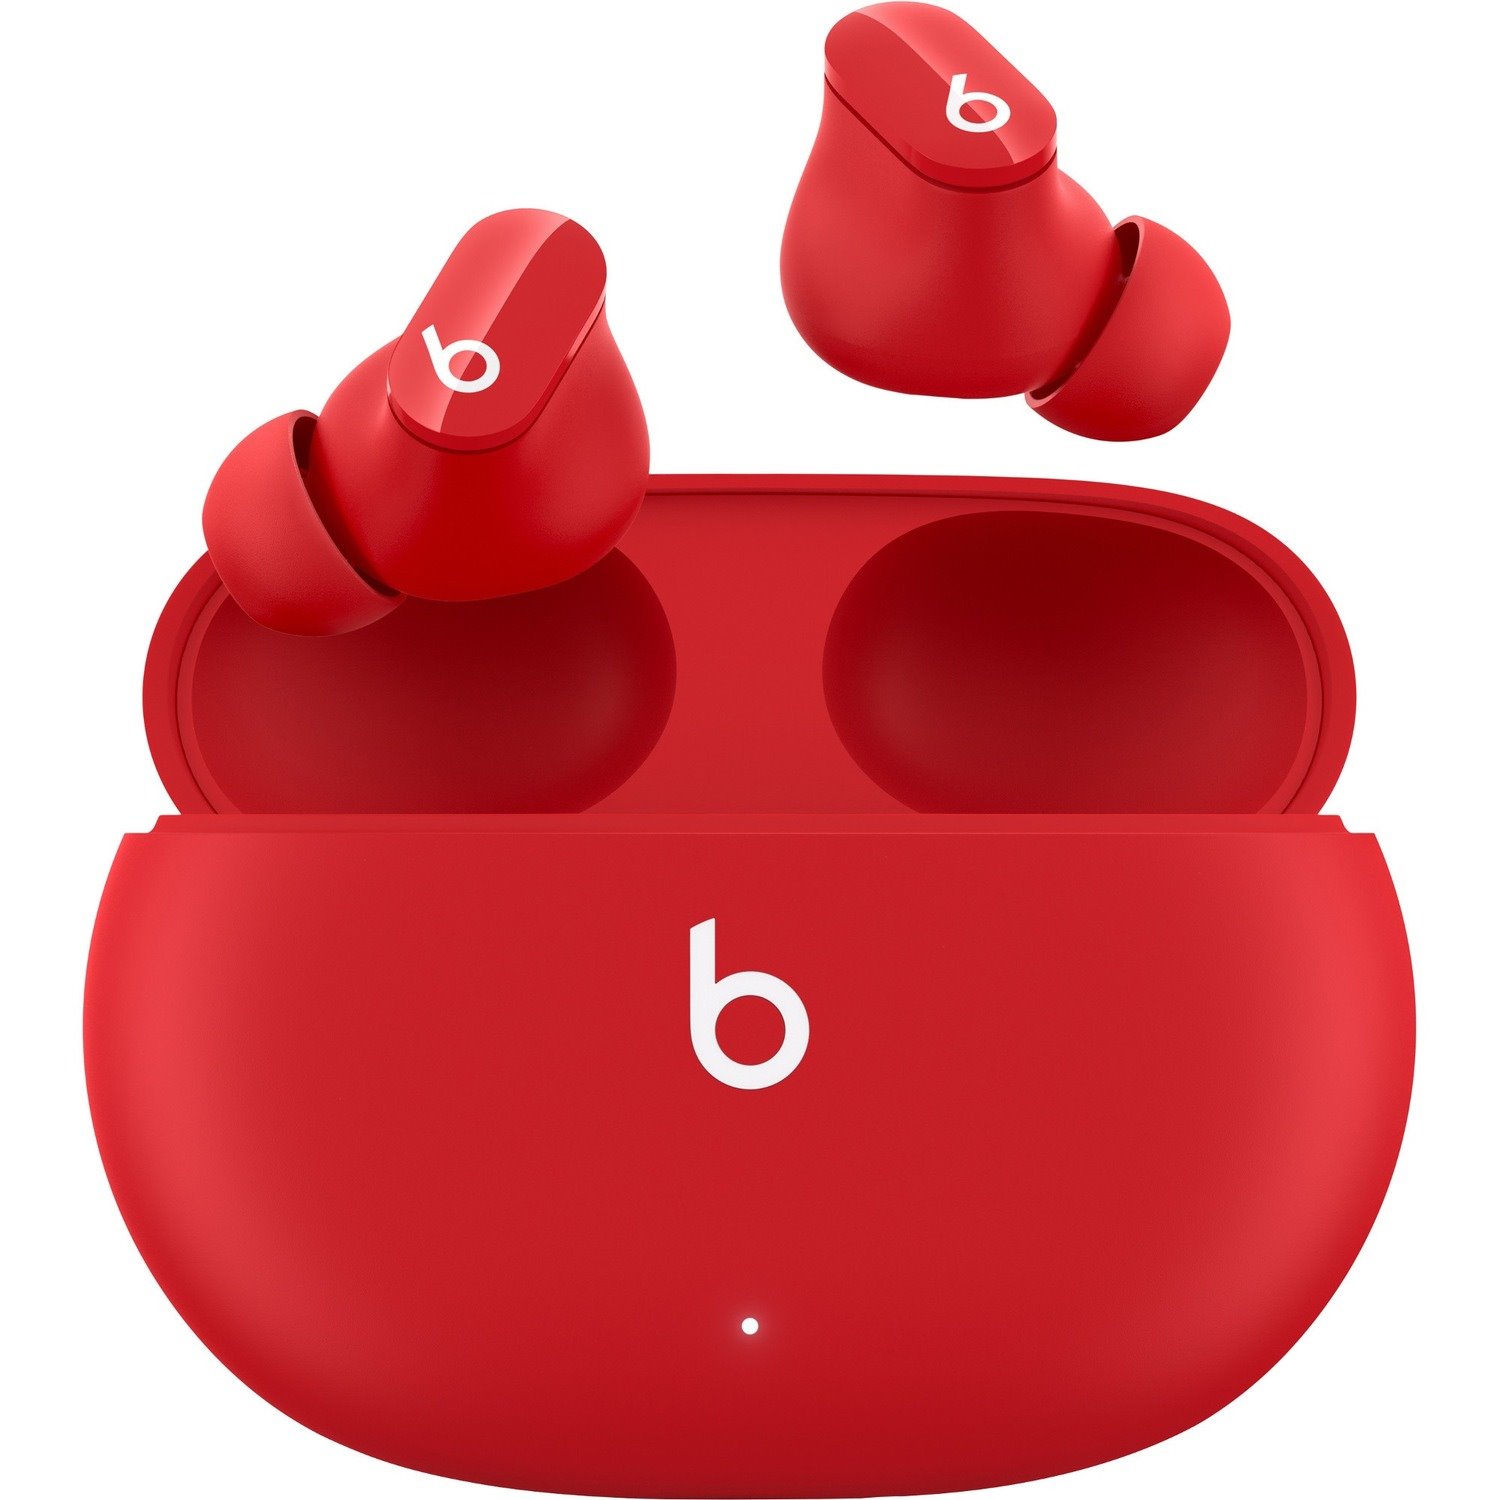 Beats by Dr. Dre True Wireless Earbud Stereo Earset - Beats Red